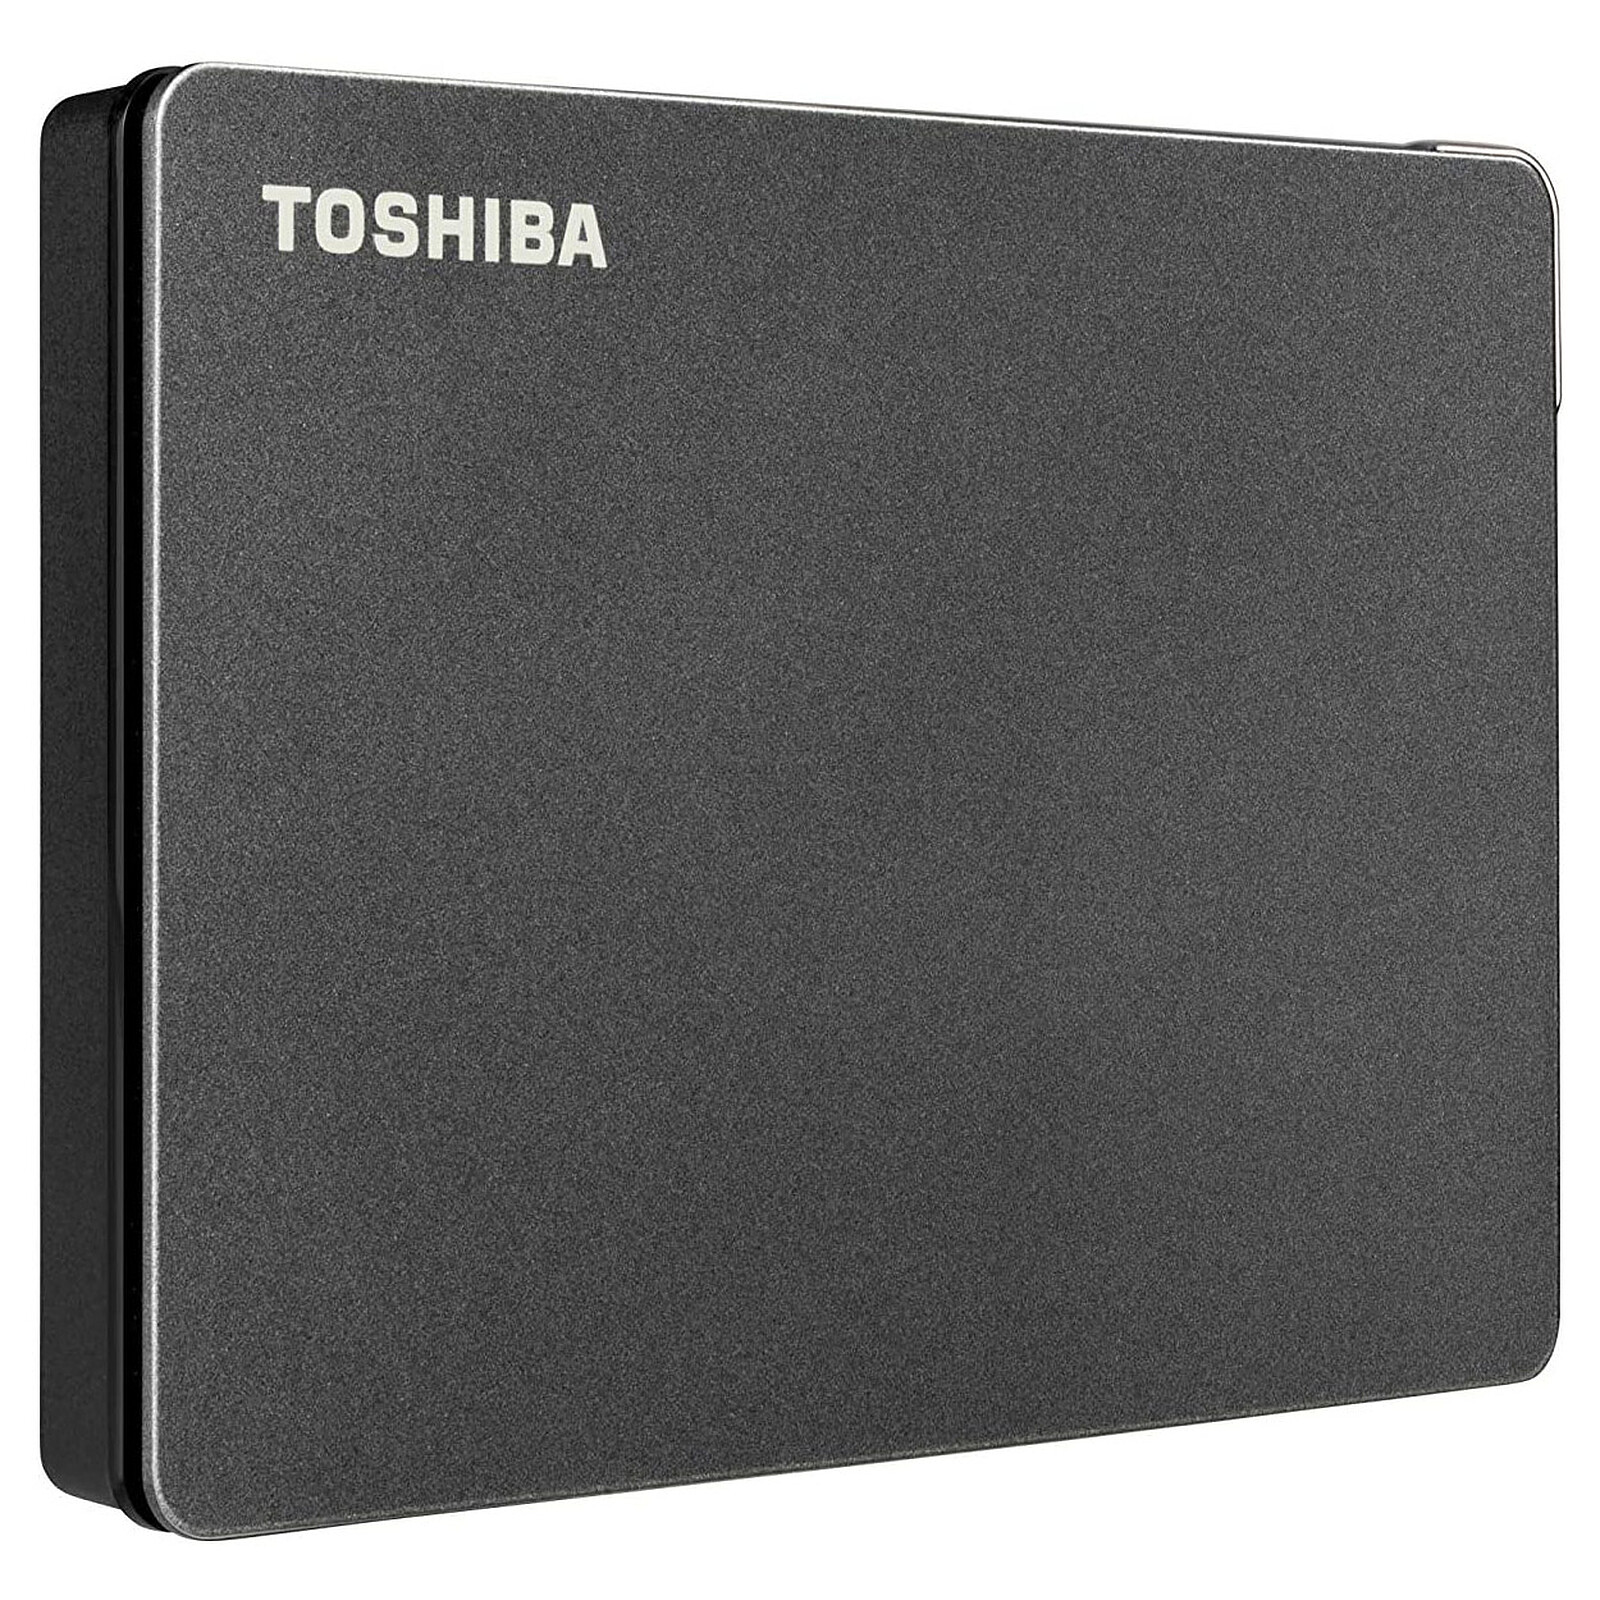 Toshiba Canvio Gaming 4 To Noir - Disque dur externe - Garantie 3 ans LDLC